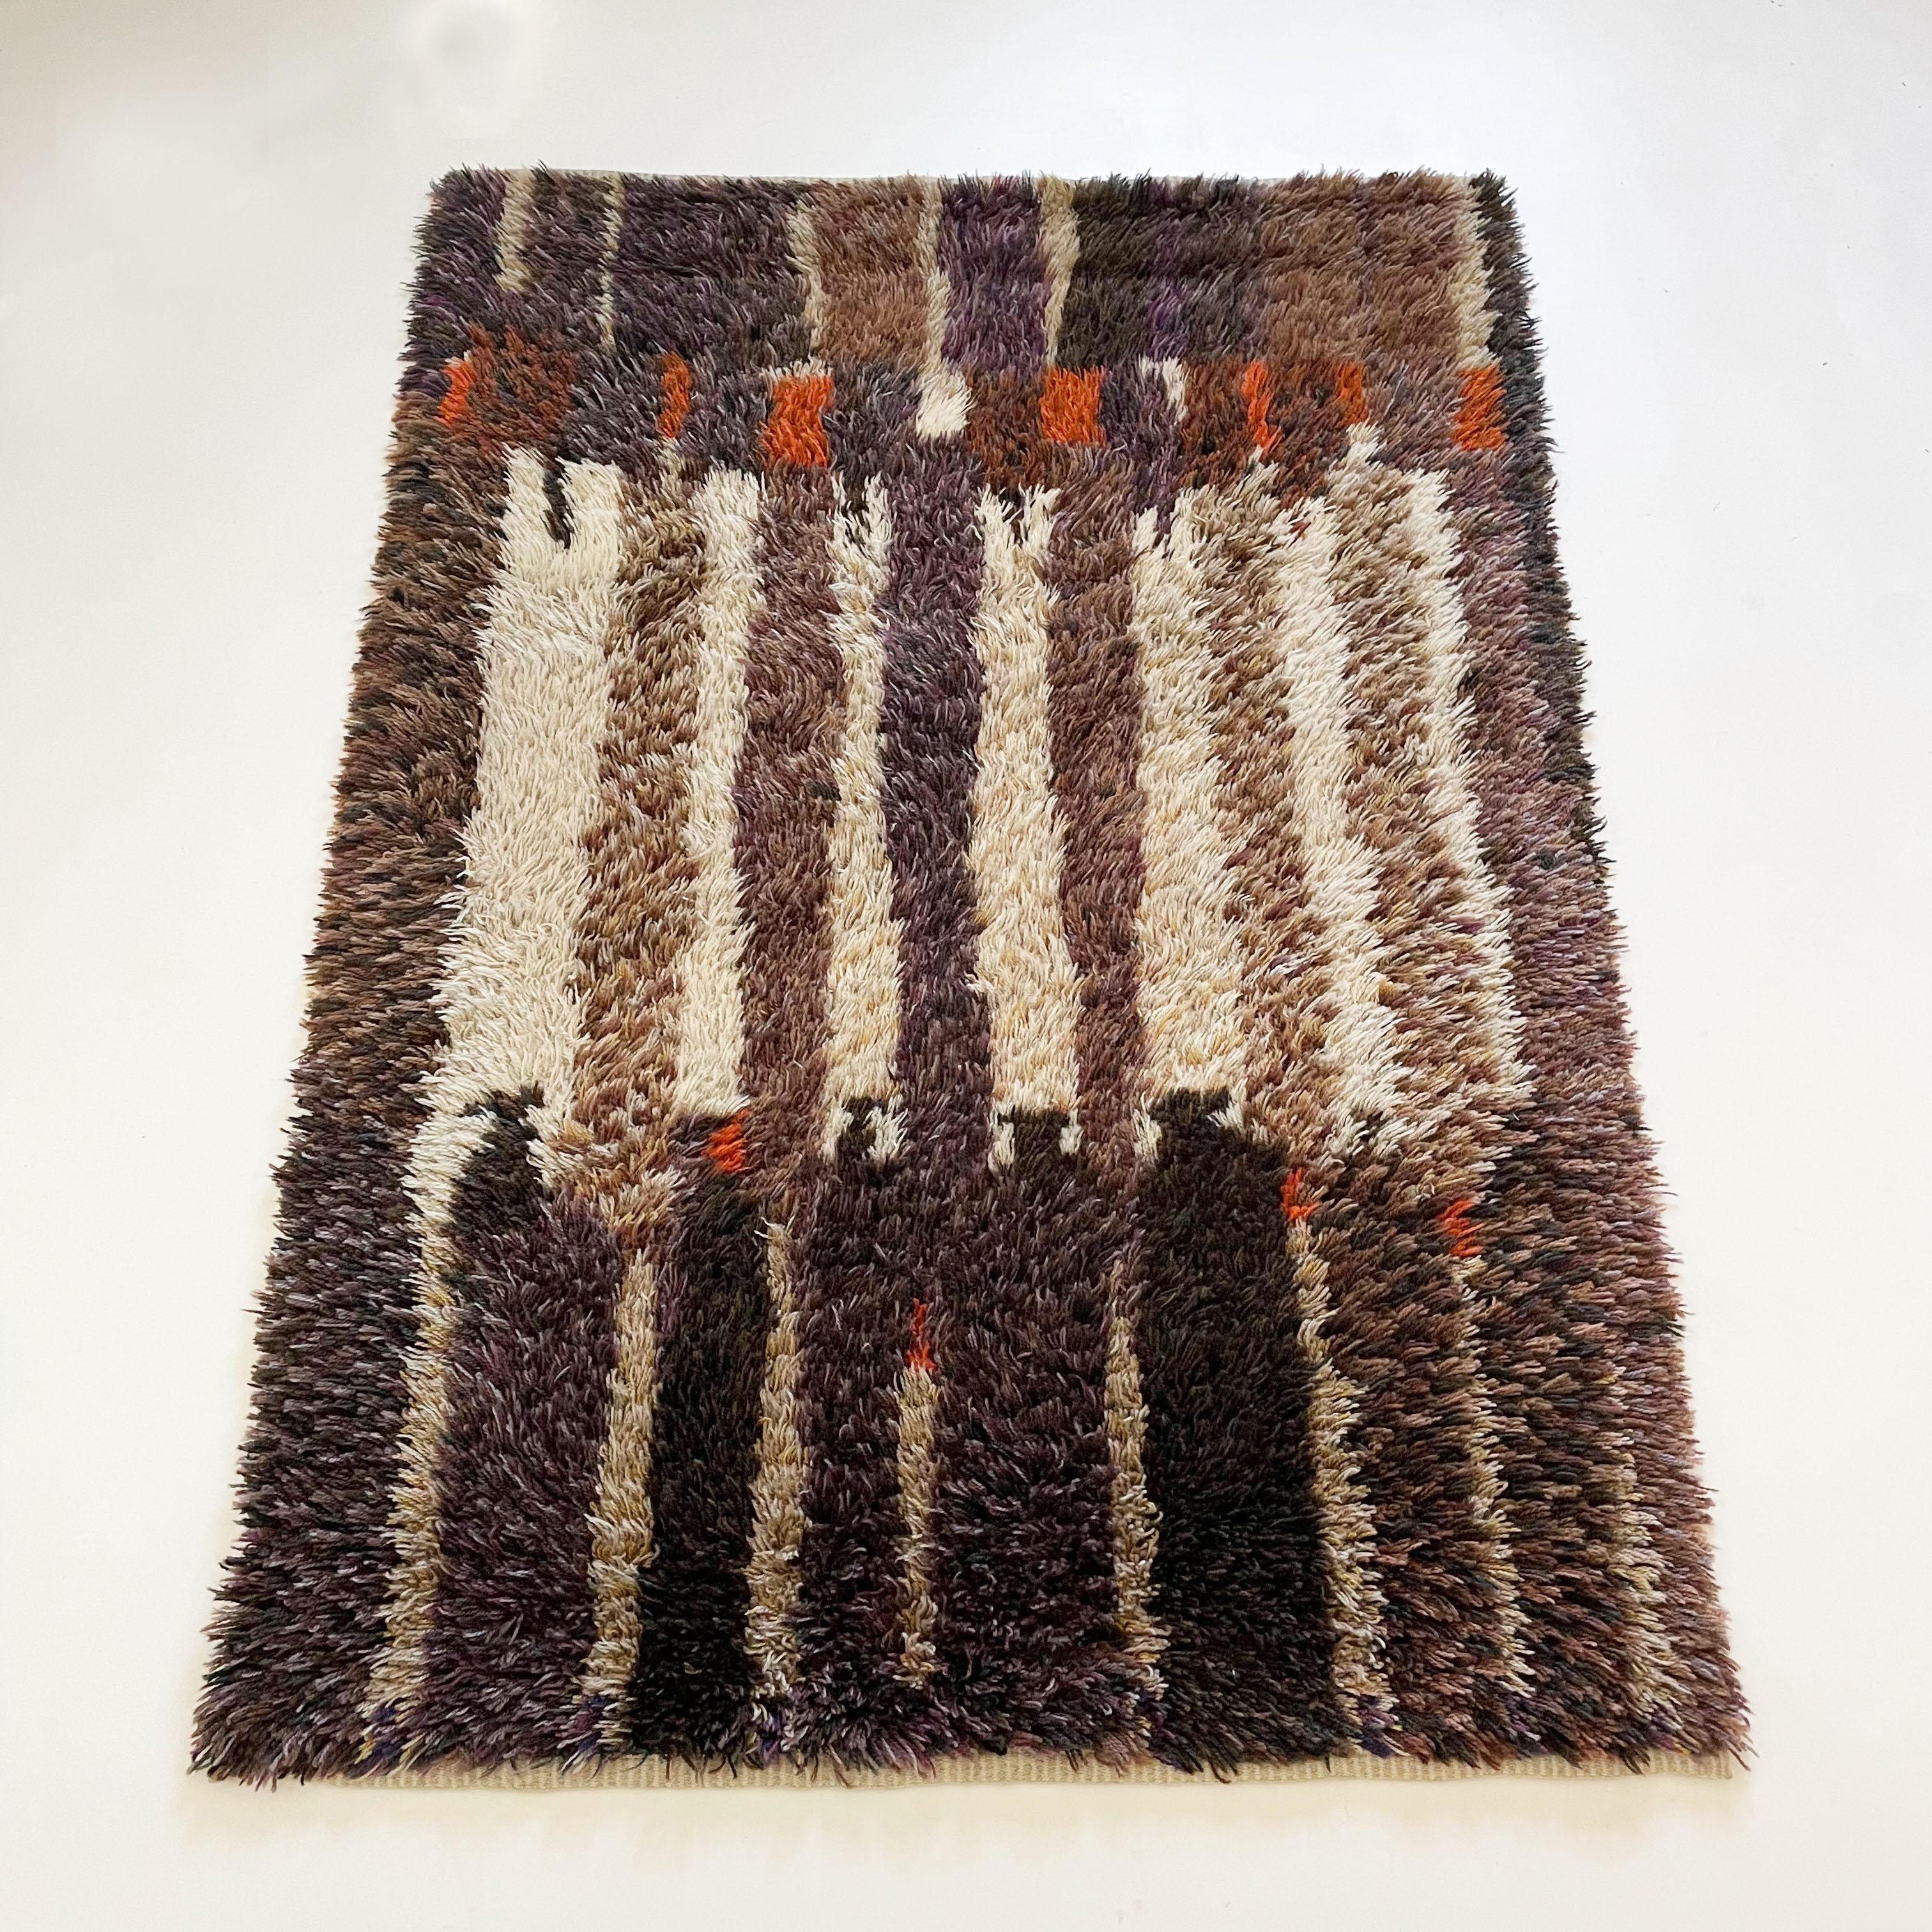 Artikel:

Hochfloriger Rya-Teppich 


Jahrzehnt:

1960s


Herkunft:

Skandinavien Schweden


Material:

100% Wolle



Dieser Teppich ist ein großartiges Beispiel für ein Pop-Art-Interieur der 1960er Jahre. Sie wurde in den